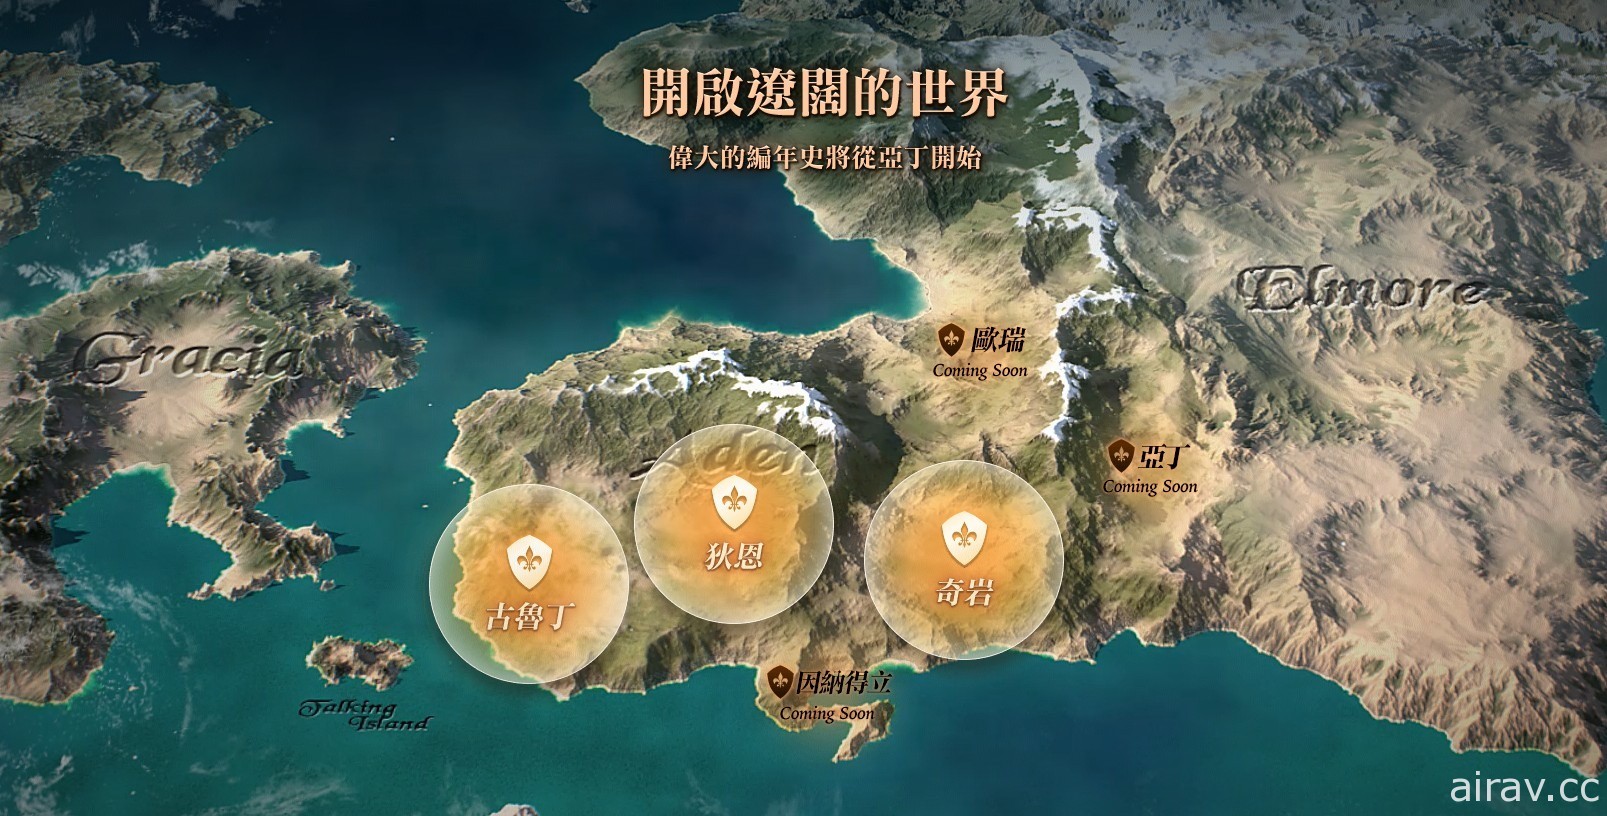 《天堂 2 M》公開奇岩領地介紹及「戰場之影」、「土瑞克獸人野營地」全新宣傳影片